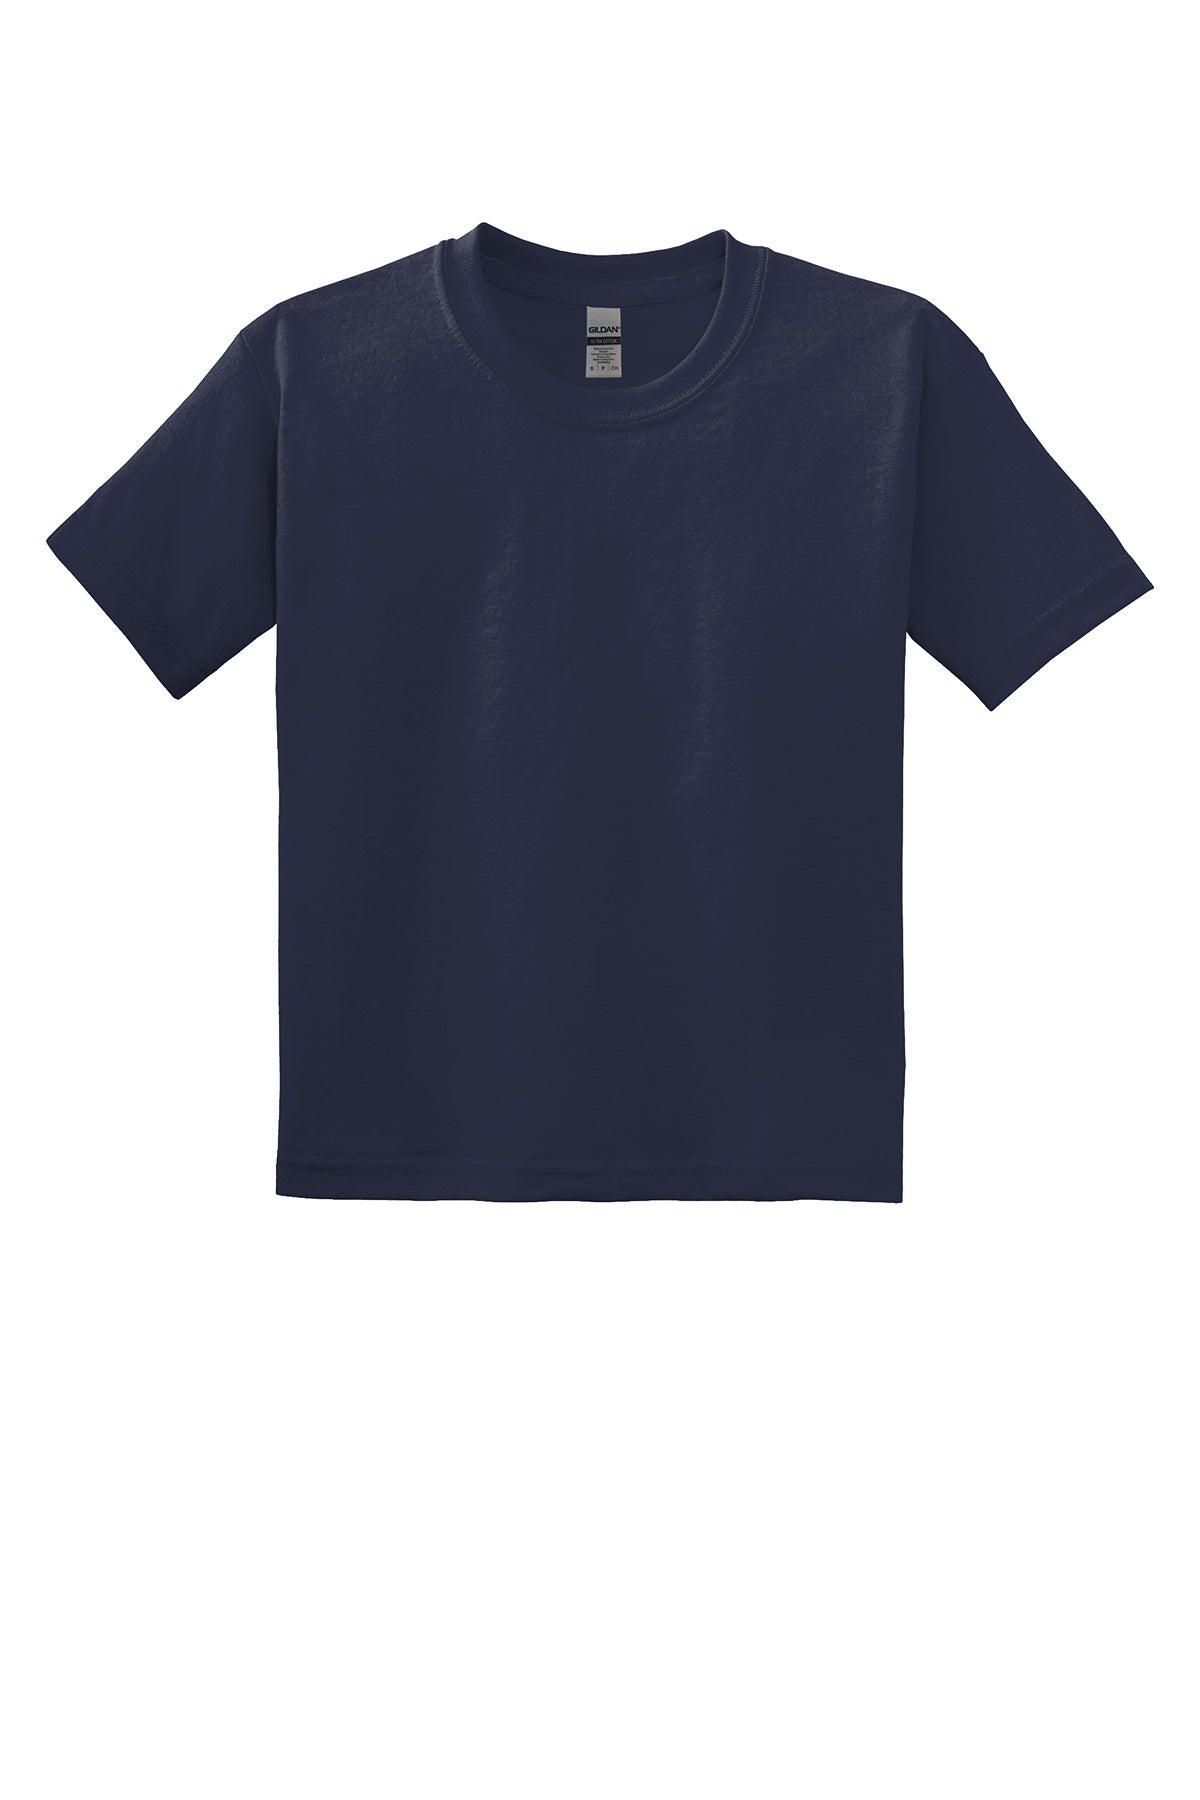 Gildan 8000B Youth Dryblend T-Shirt Yth Small / Navy